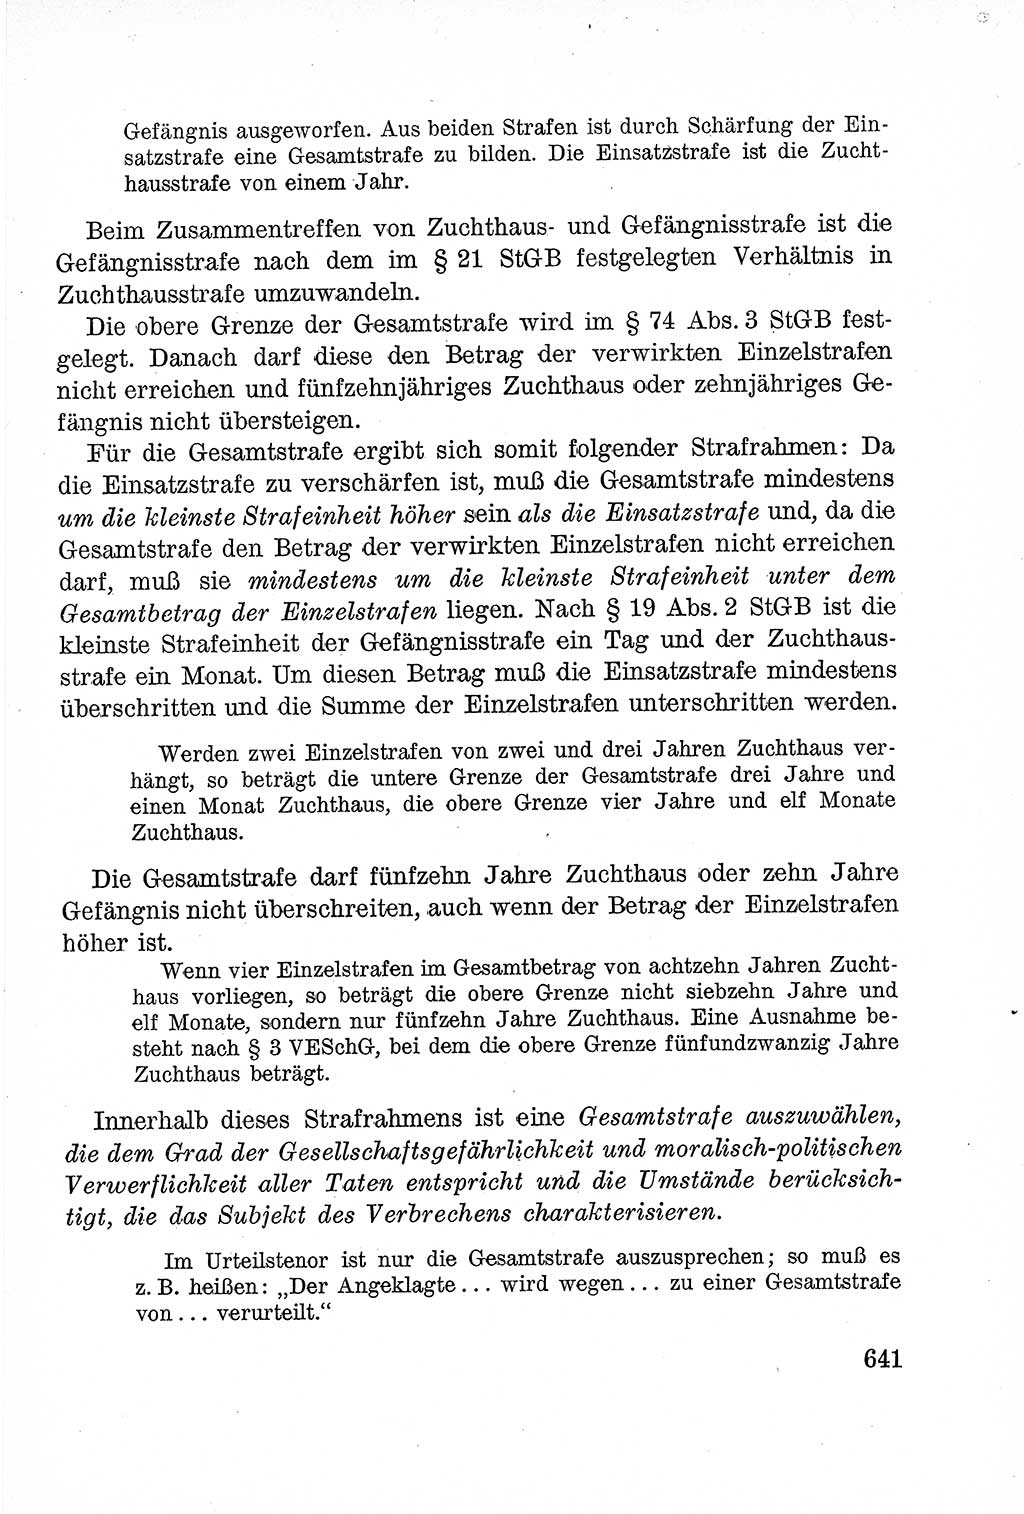 Lehrbuch des Strafrechts der Deutschen Demokratischen Republik (DDR), Allgemeiner Teil 1957, Seite 641 (Lb. Strafr. DDR AT 1957, S. 641)